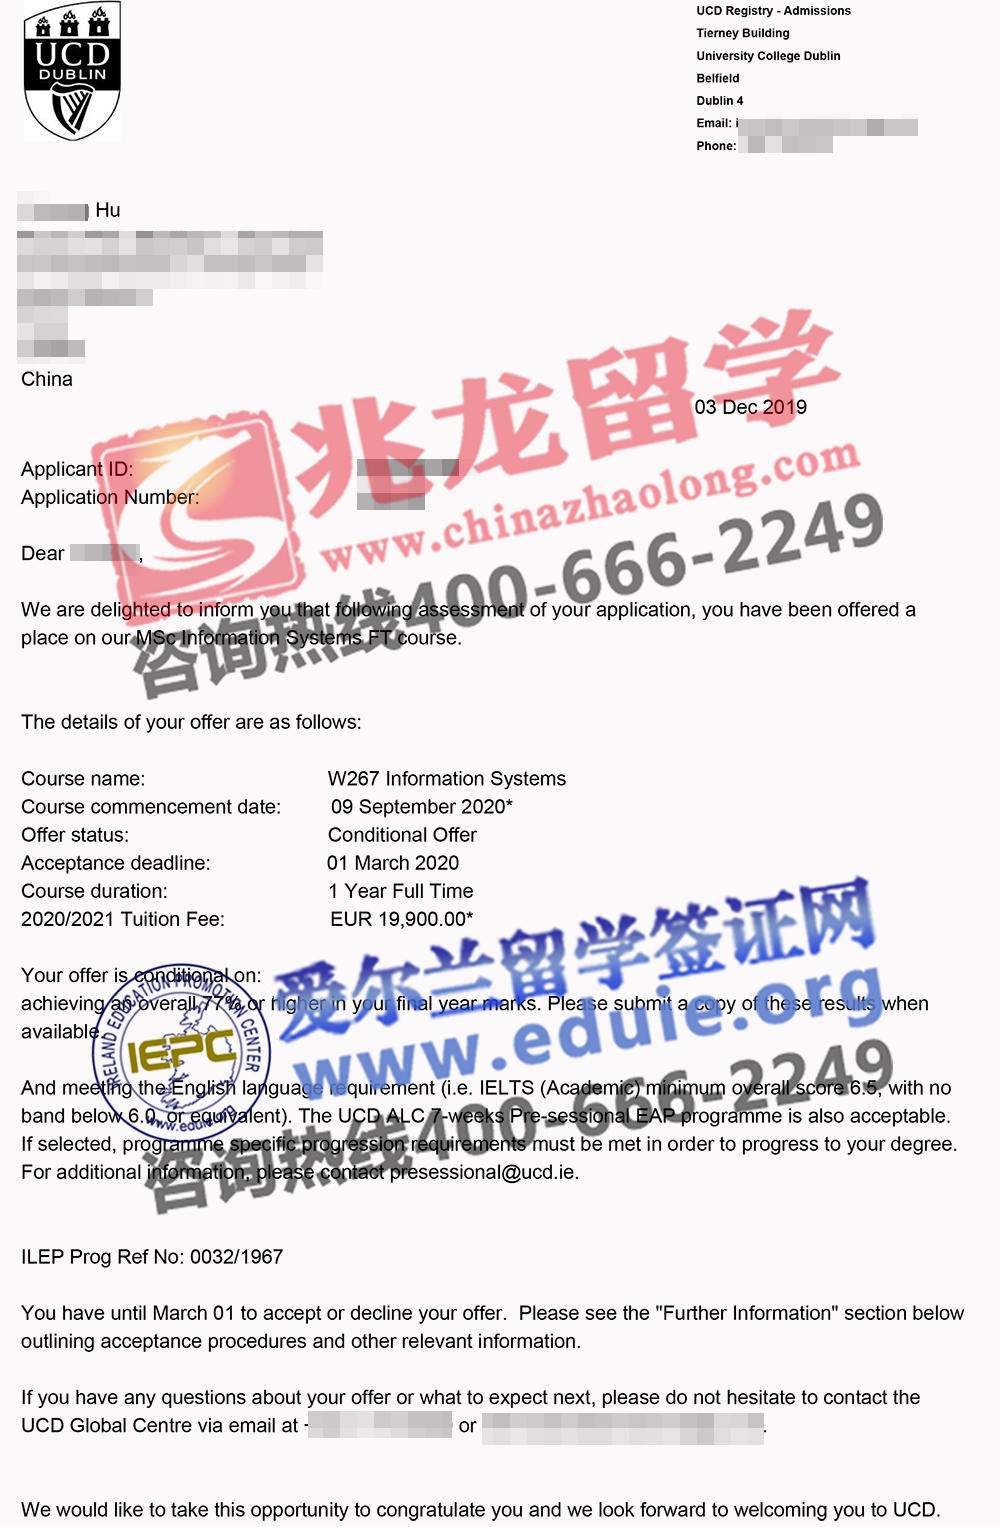 胡yuhang圣三一大学EE电子与电气工程硕士offer-北京兆龙留学.jpg